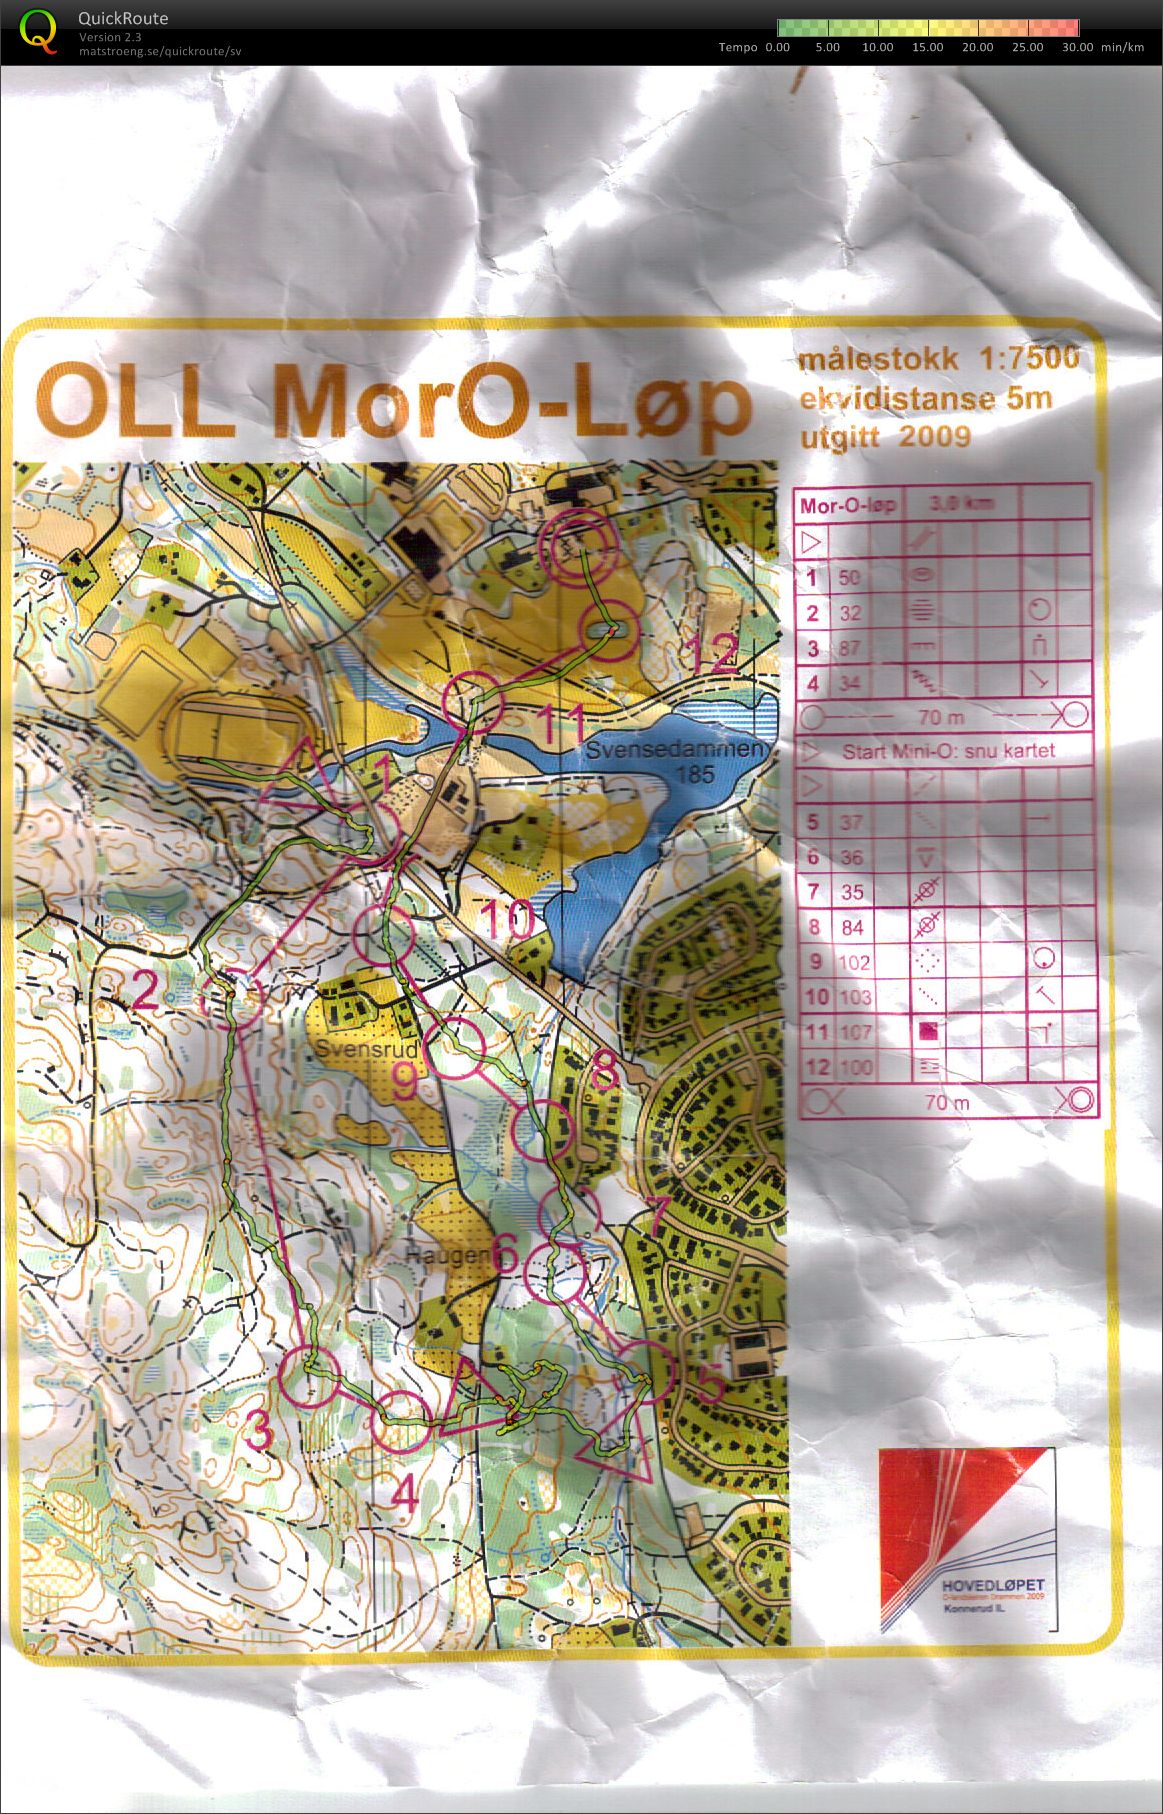 OLL MorO-løp  (11/08/2009)